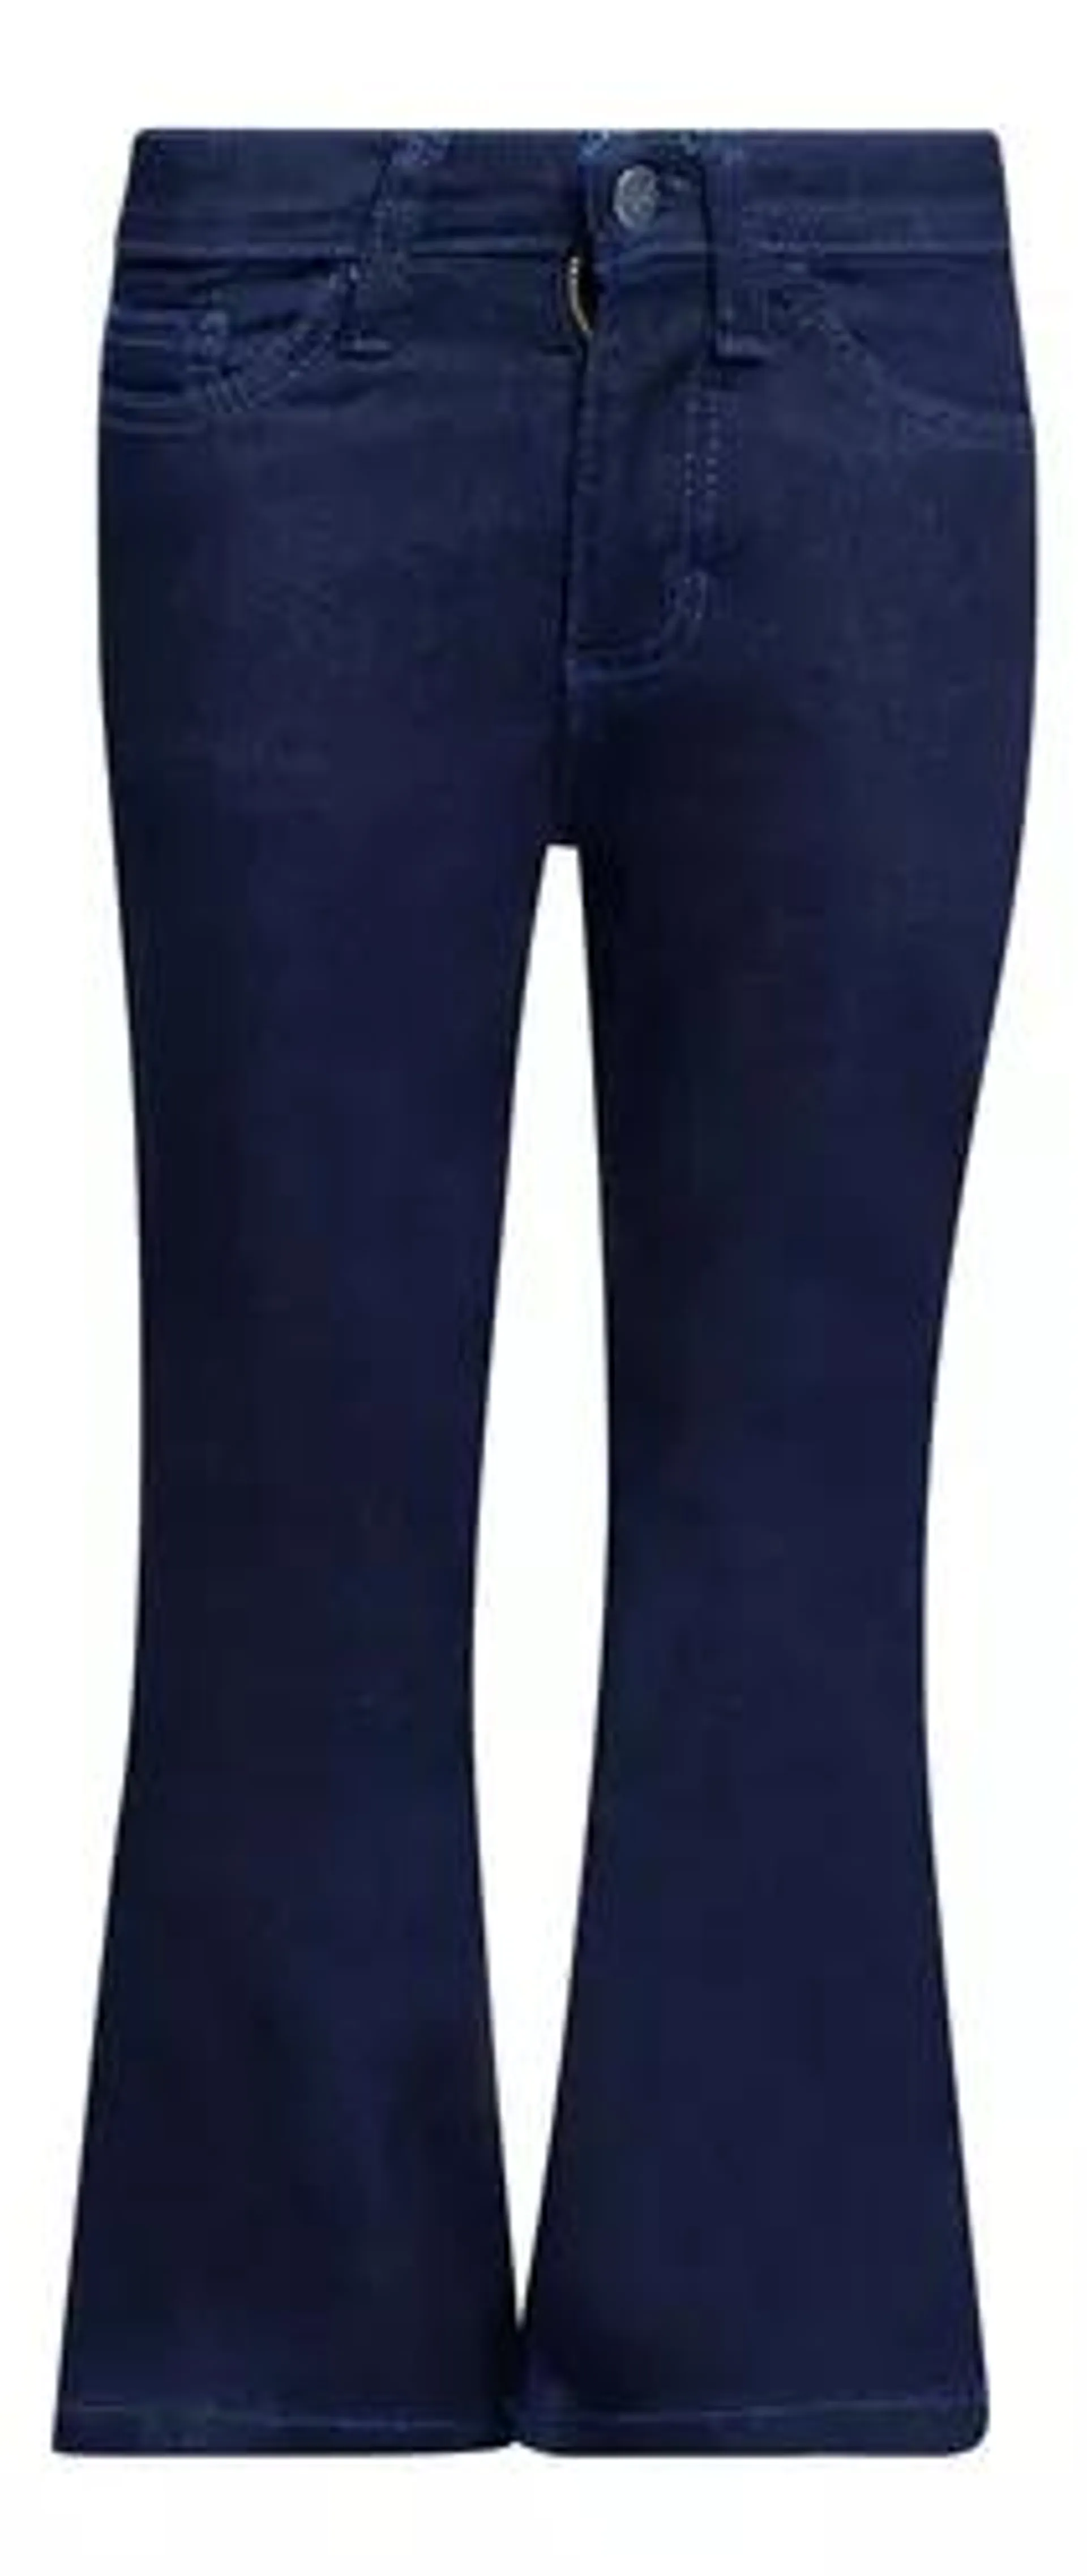 Jeans Vaquero Niña Wrangler Boot Cut696